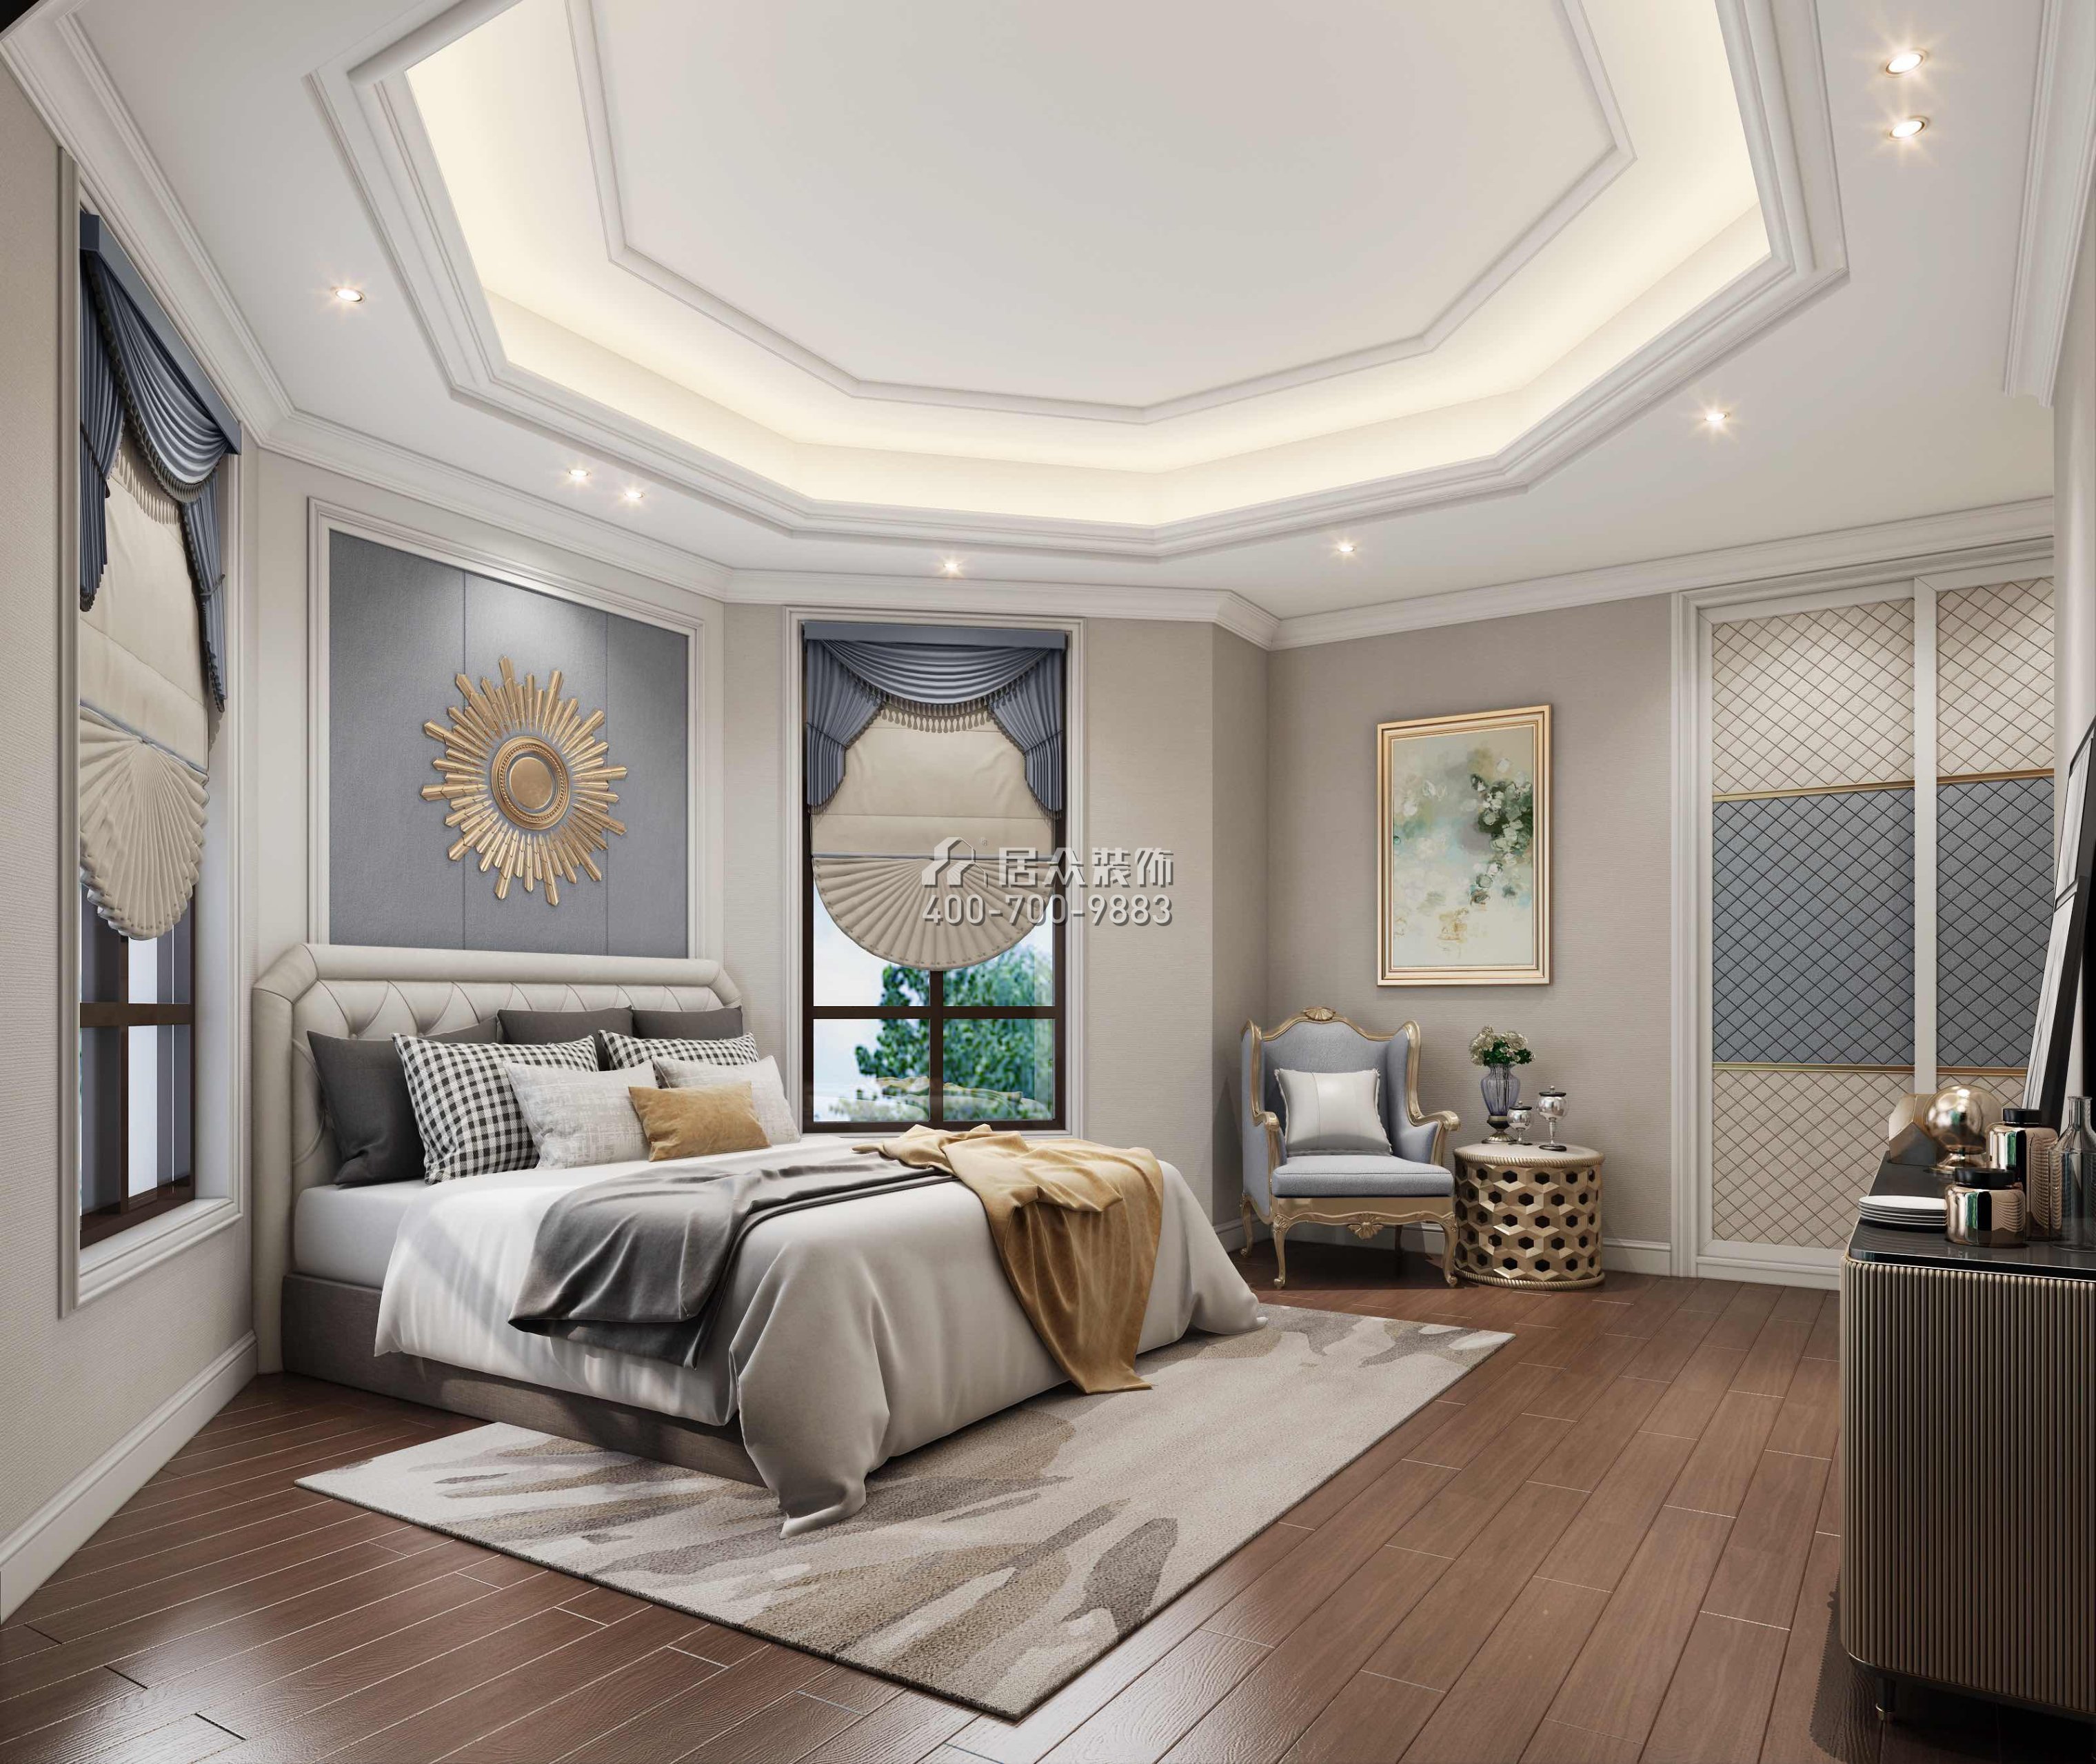 卧龙山一号500平方米欧式风格别墅户型卧室装修效果图